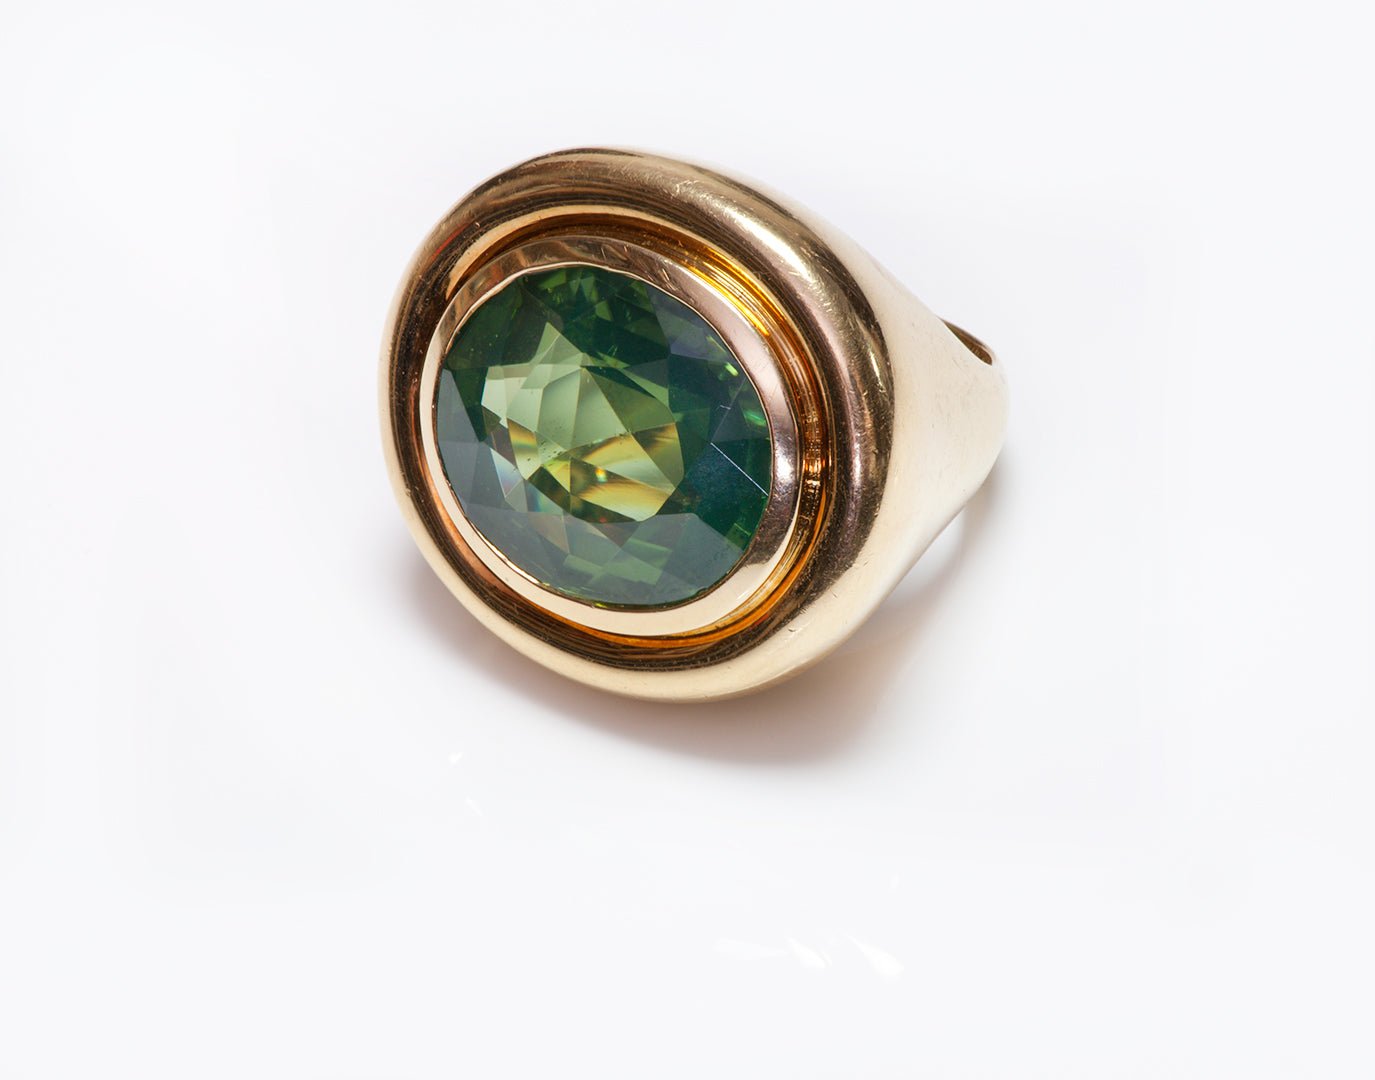 Tiffany & Co. Paloma Picasso 18K Gold Peridot Ring